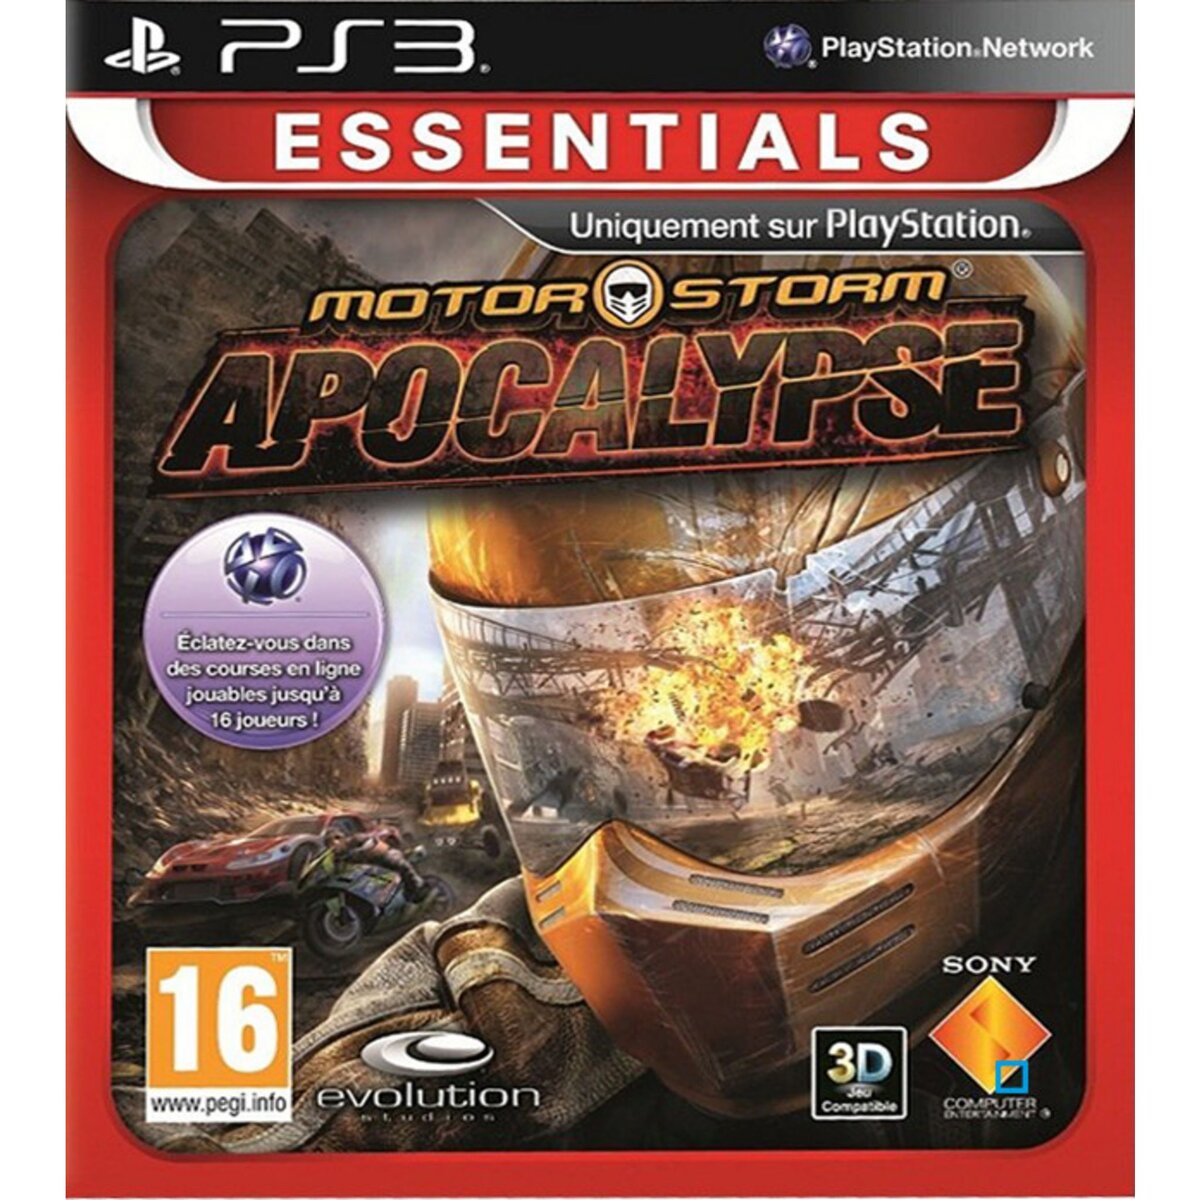 MotorStorm Apocalypse PS3 Essentials